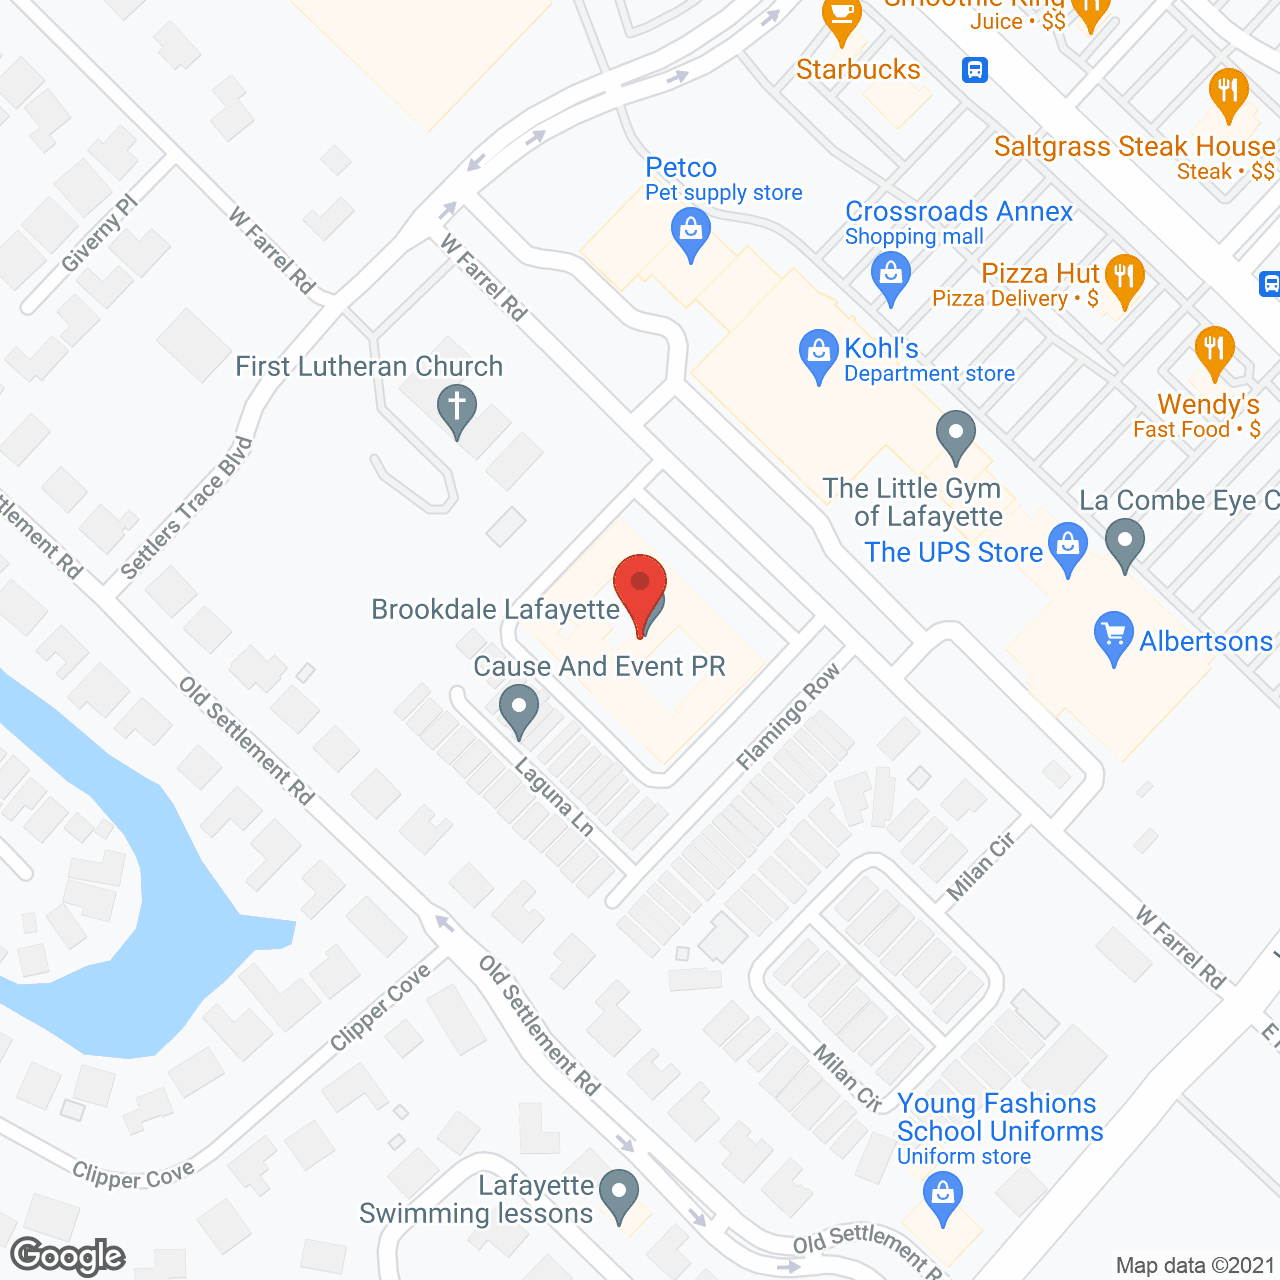 Brookdale Lafayette in google map